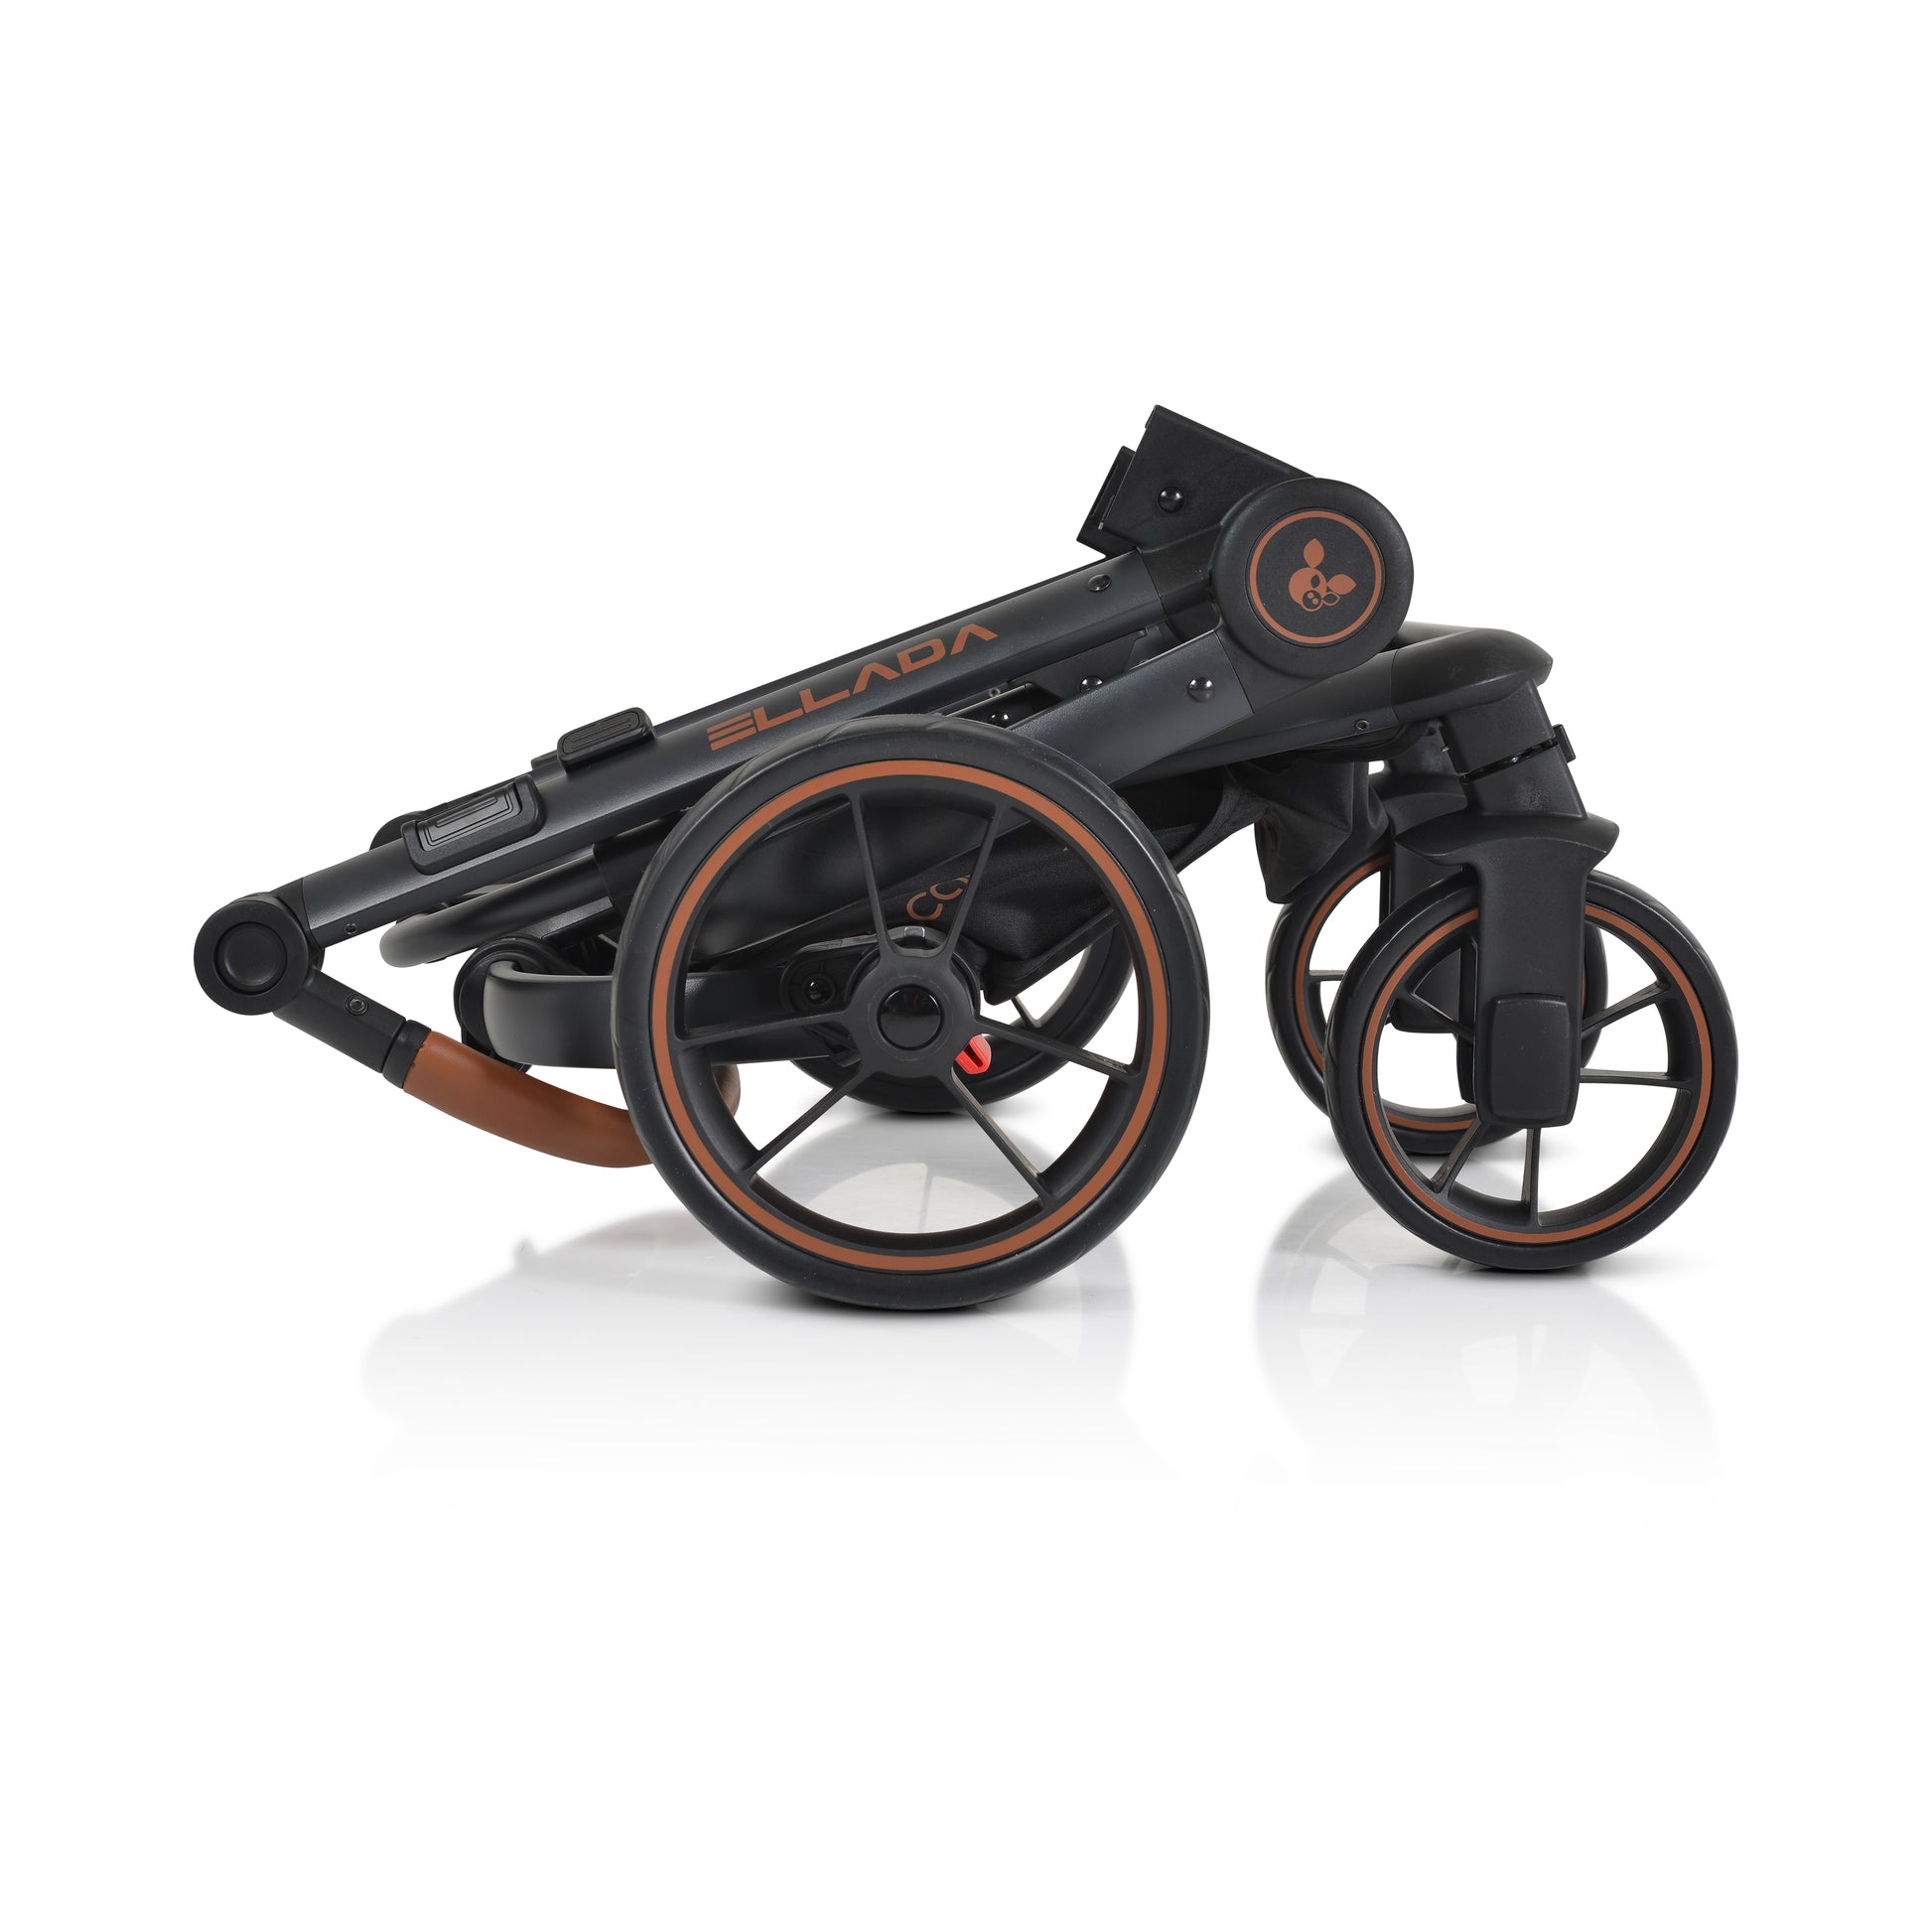 Cangaroo Комбинирана детска количка Ellada 3в1 черен